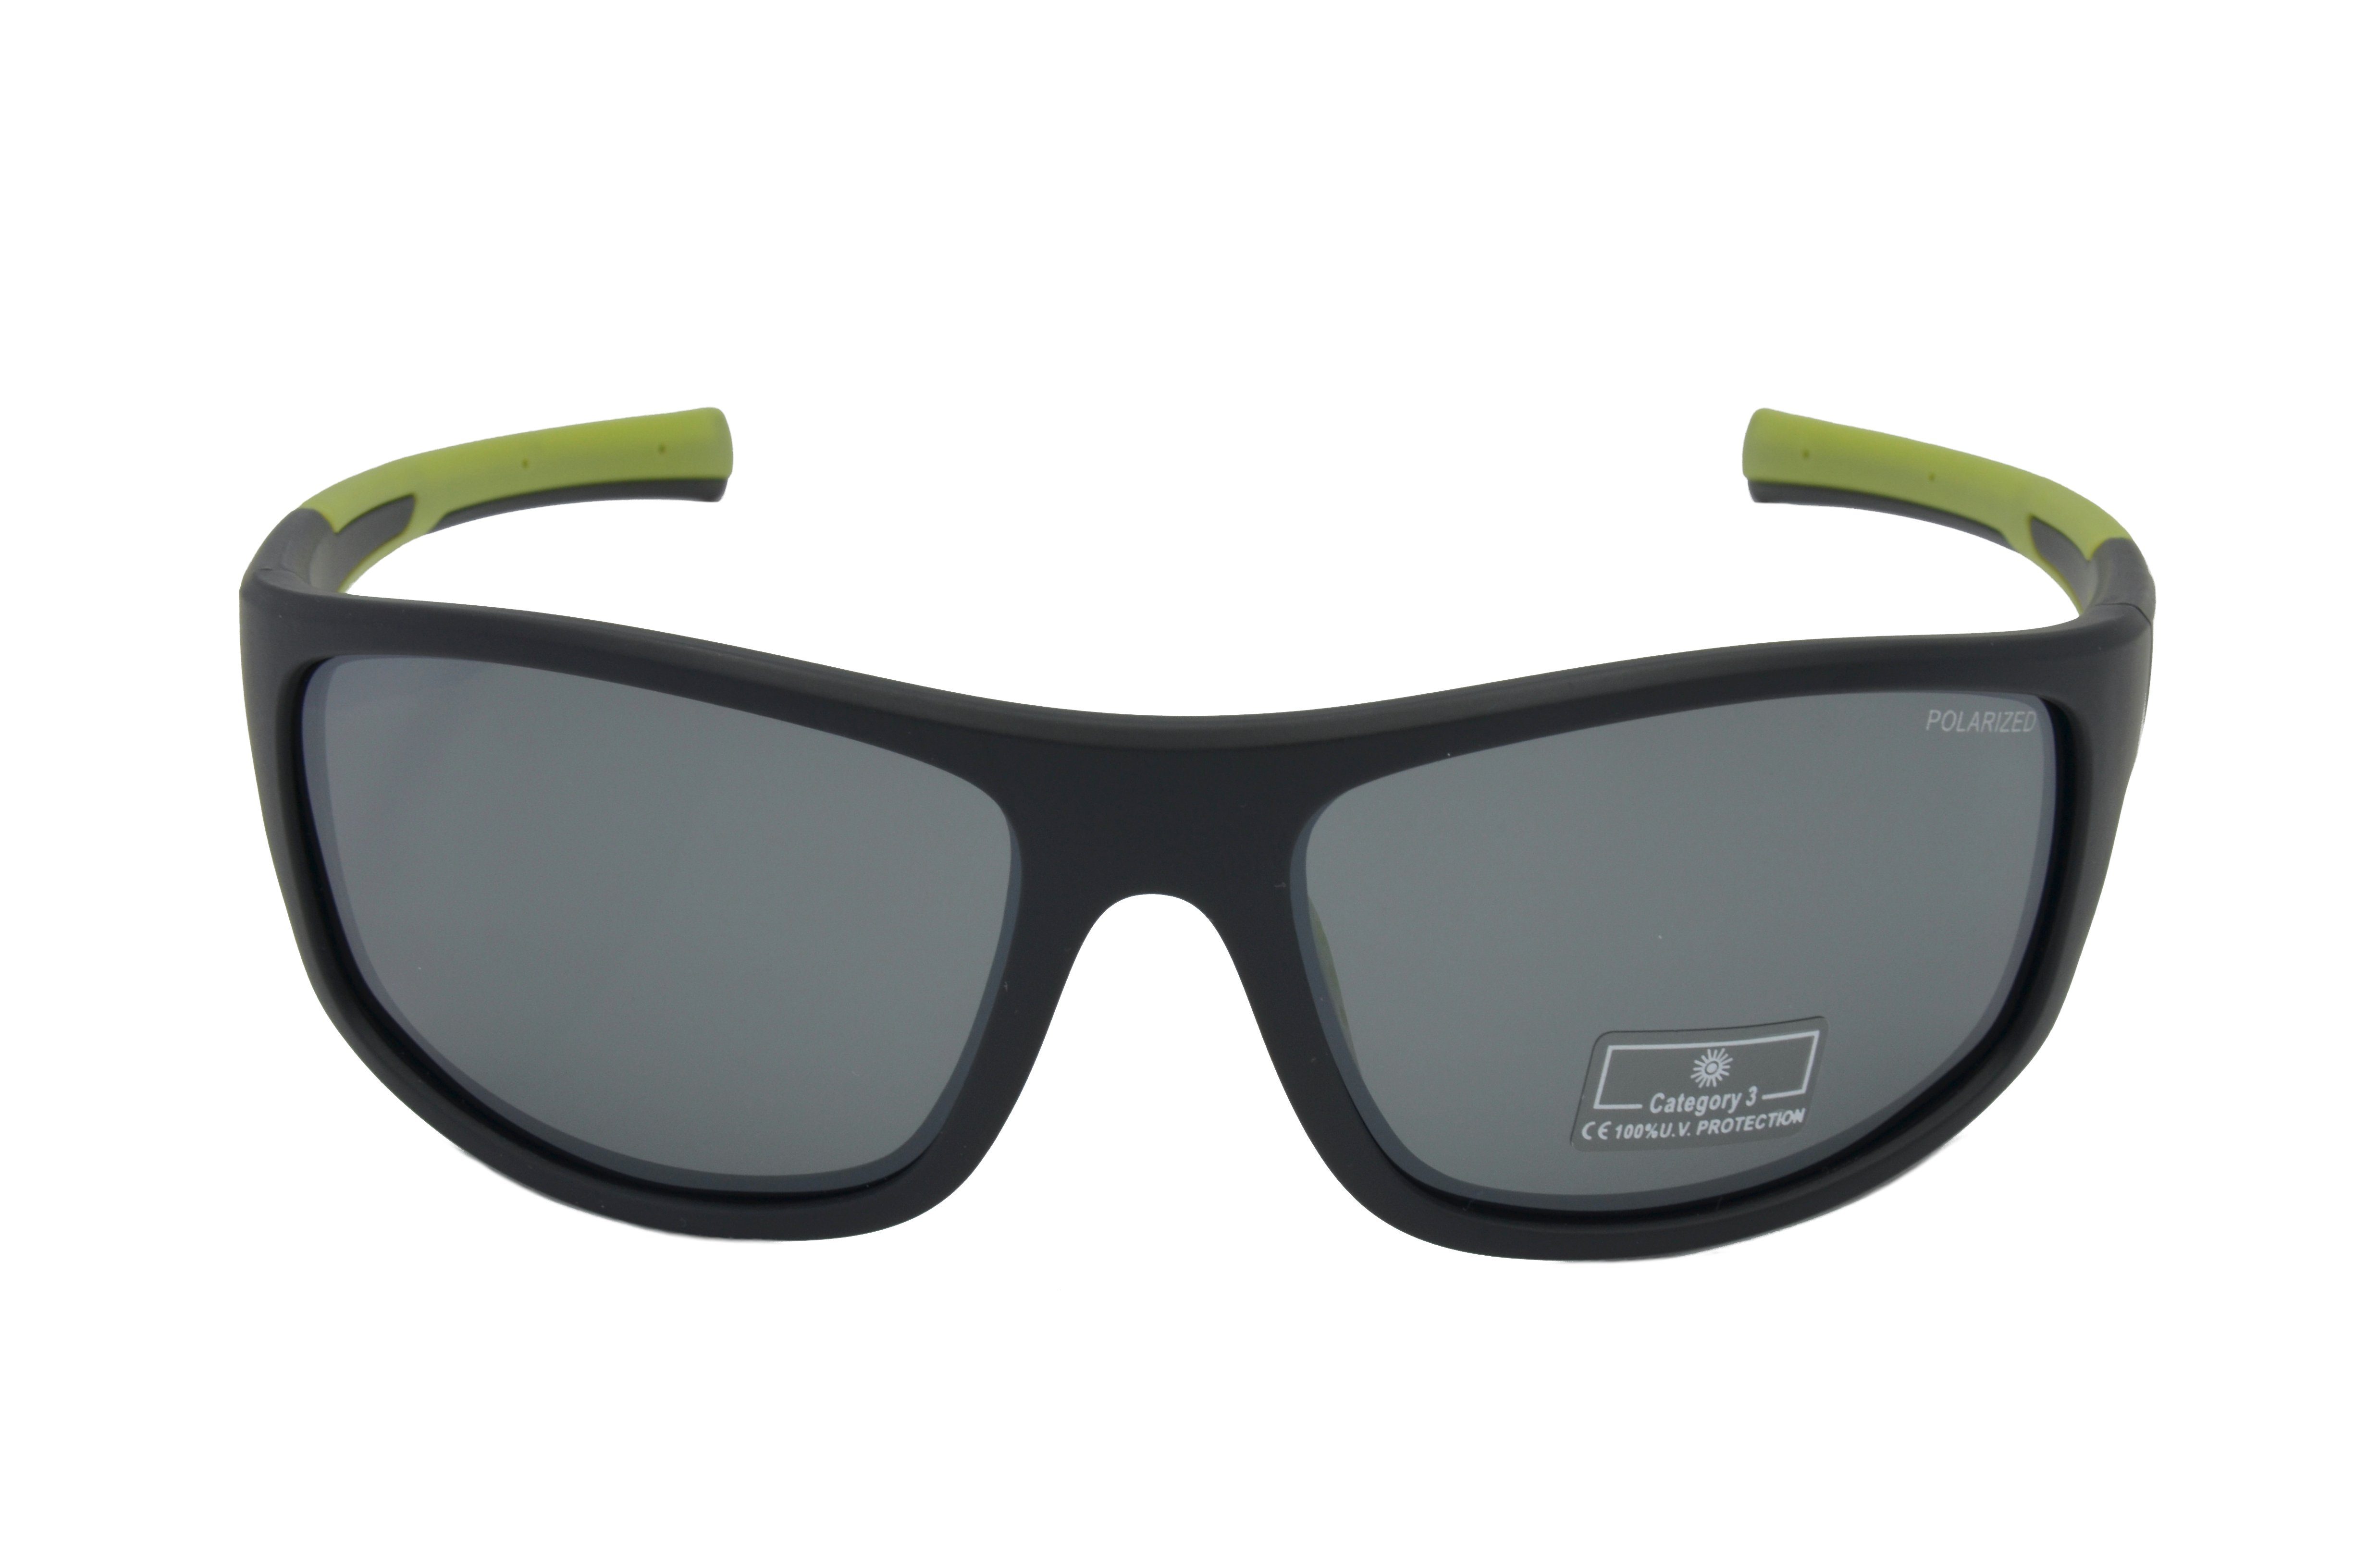 Gamswild Sportbrille WS2238 Sonnenbrille Herren Damen schwarz-grün / -orange, Fahrradbrille -grün Unisex, polarisiert, grau, schwarz-rot, TR90 Skibrille blau